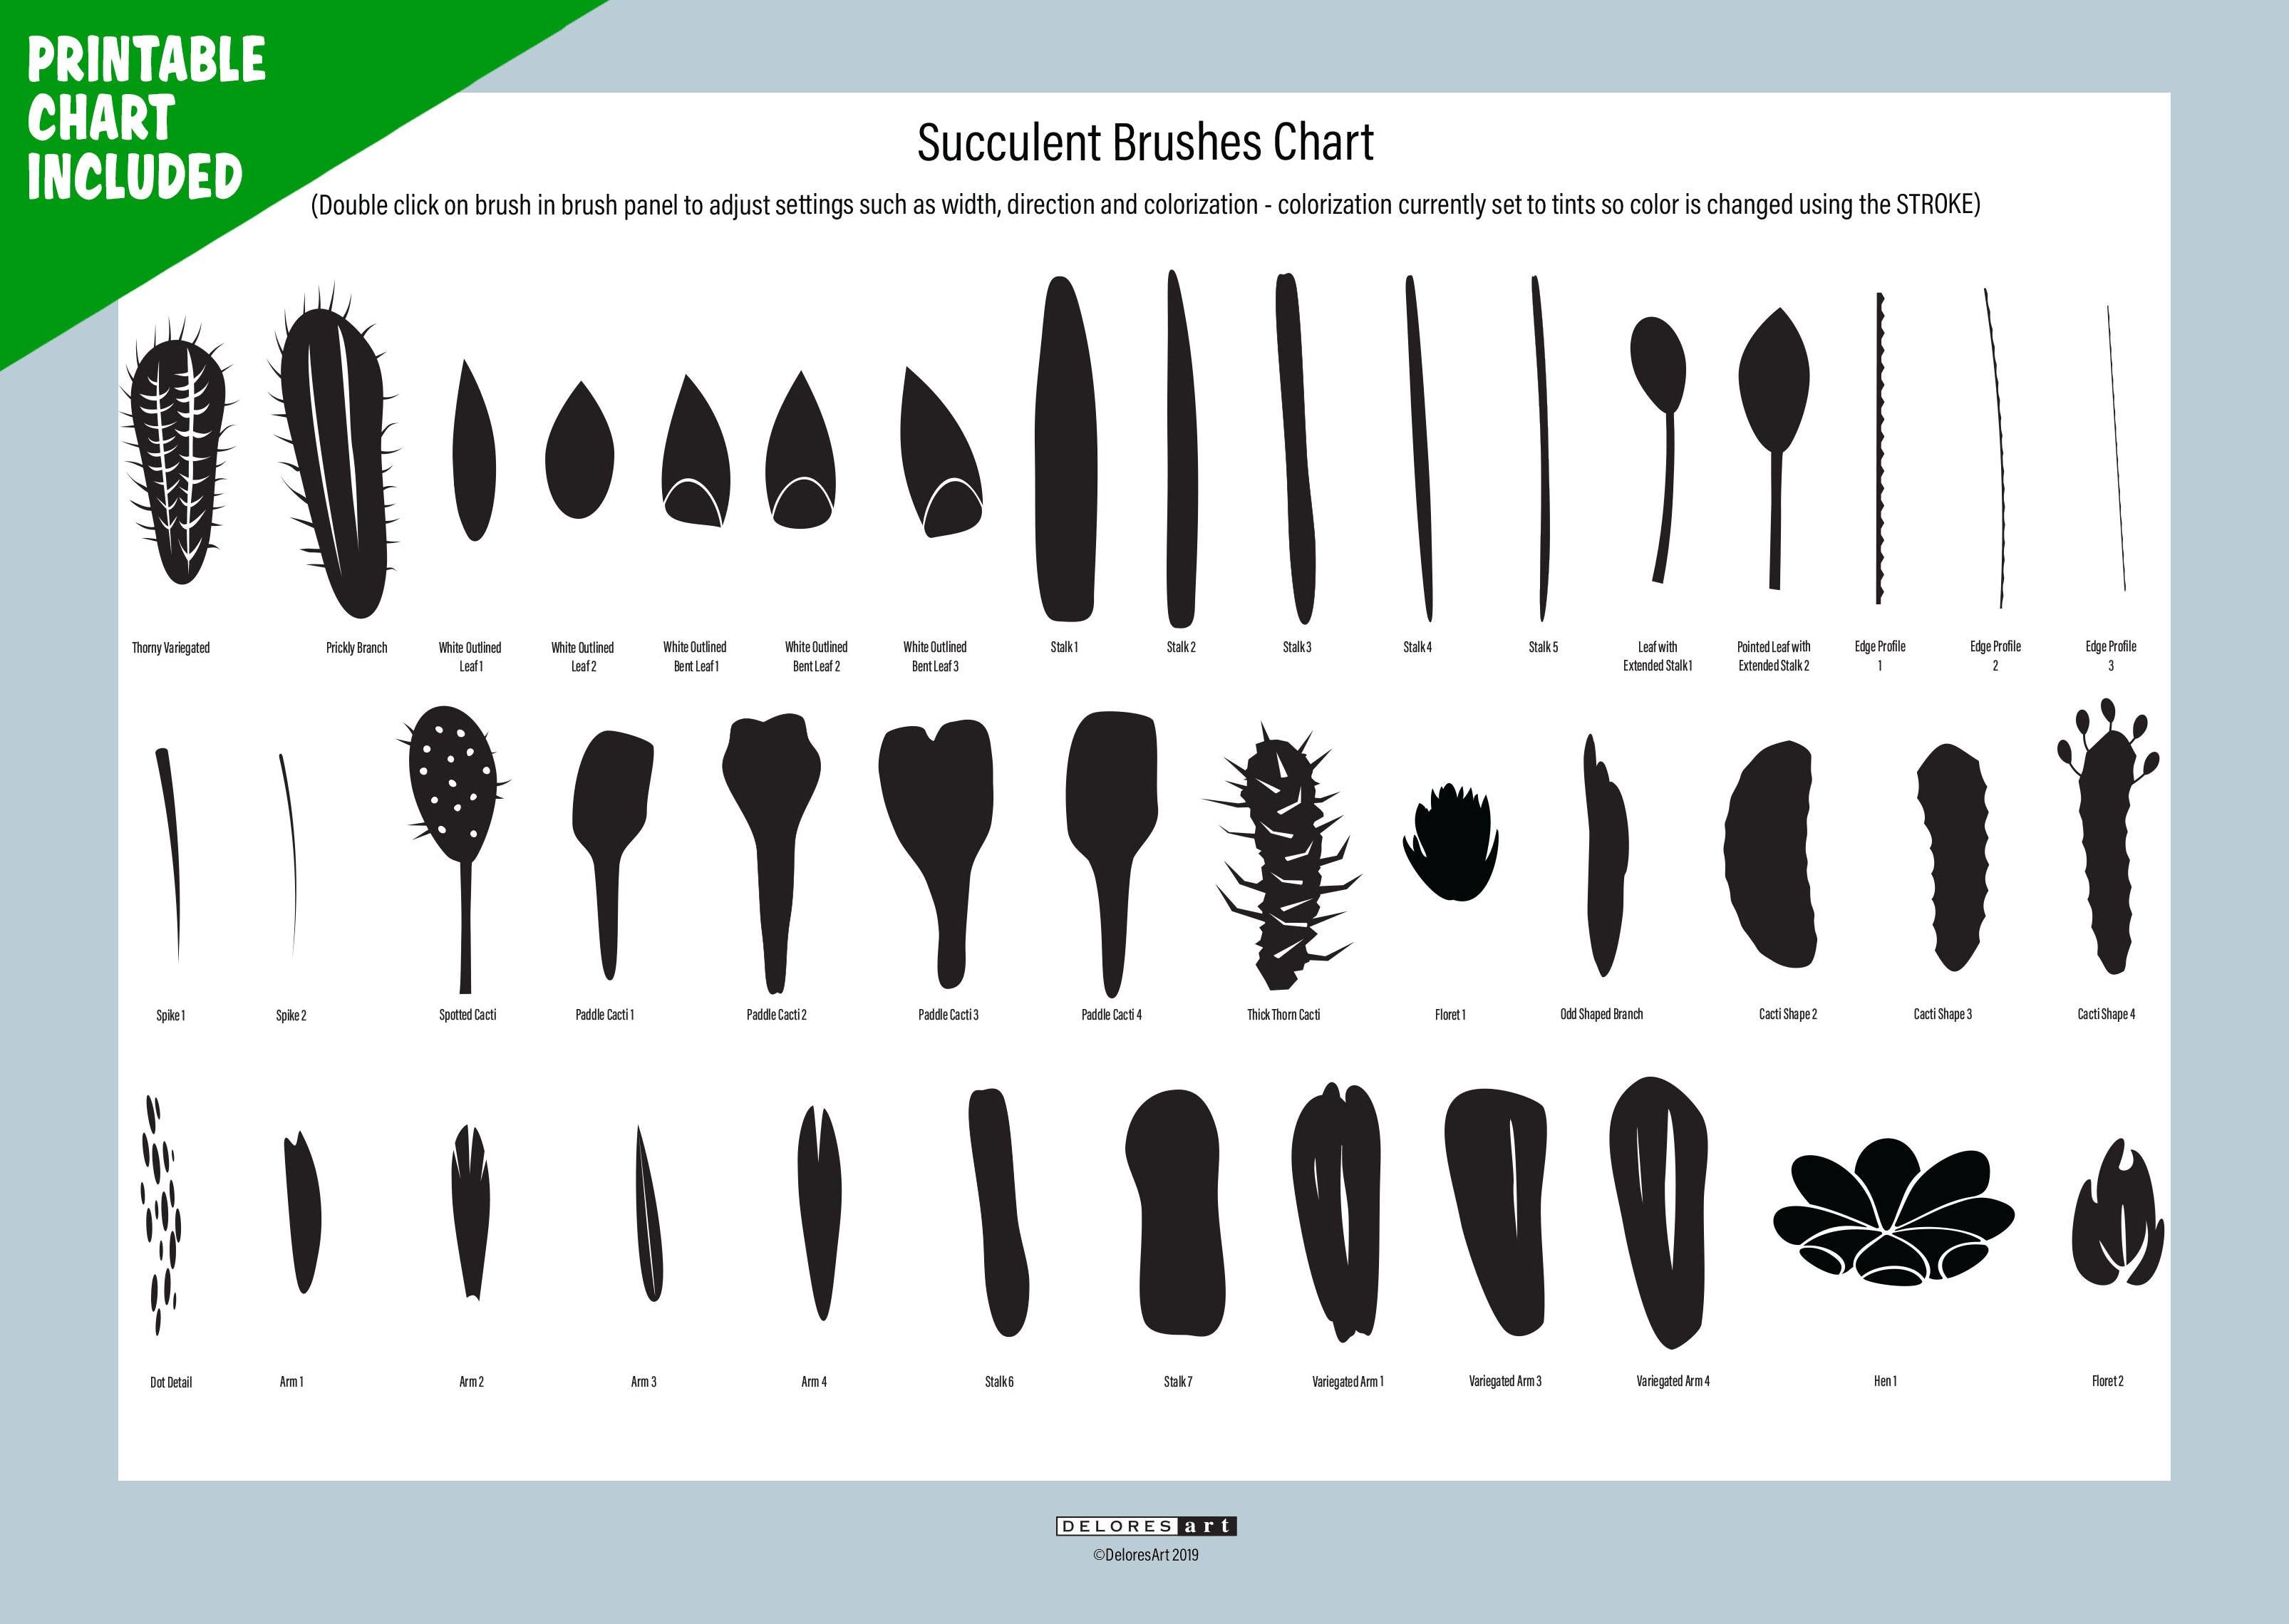 Volume 15 - Sweet Succulent Vector Brushes - deloresartcanada